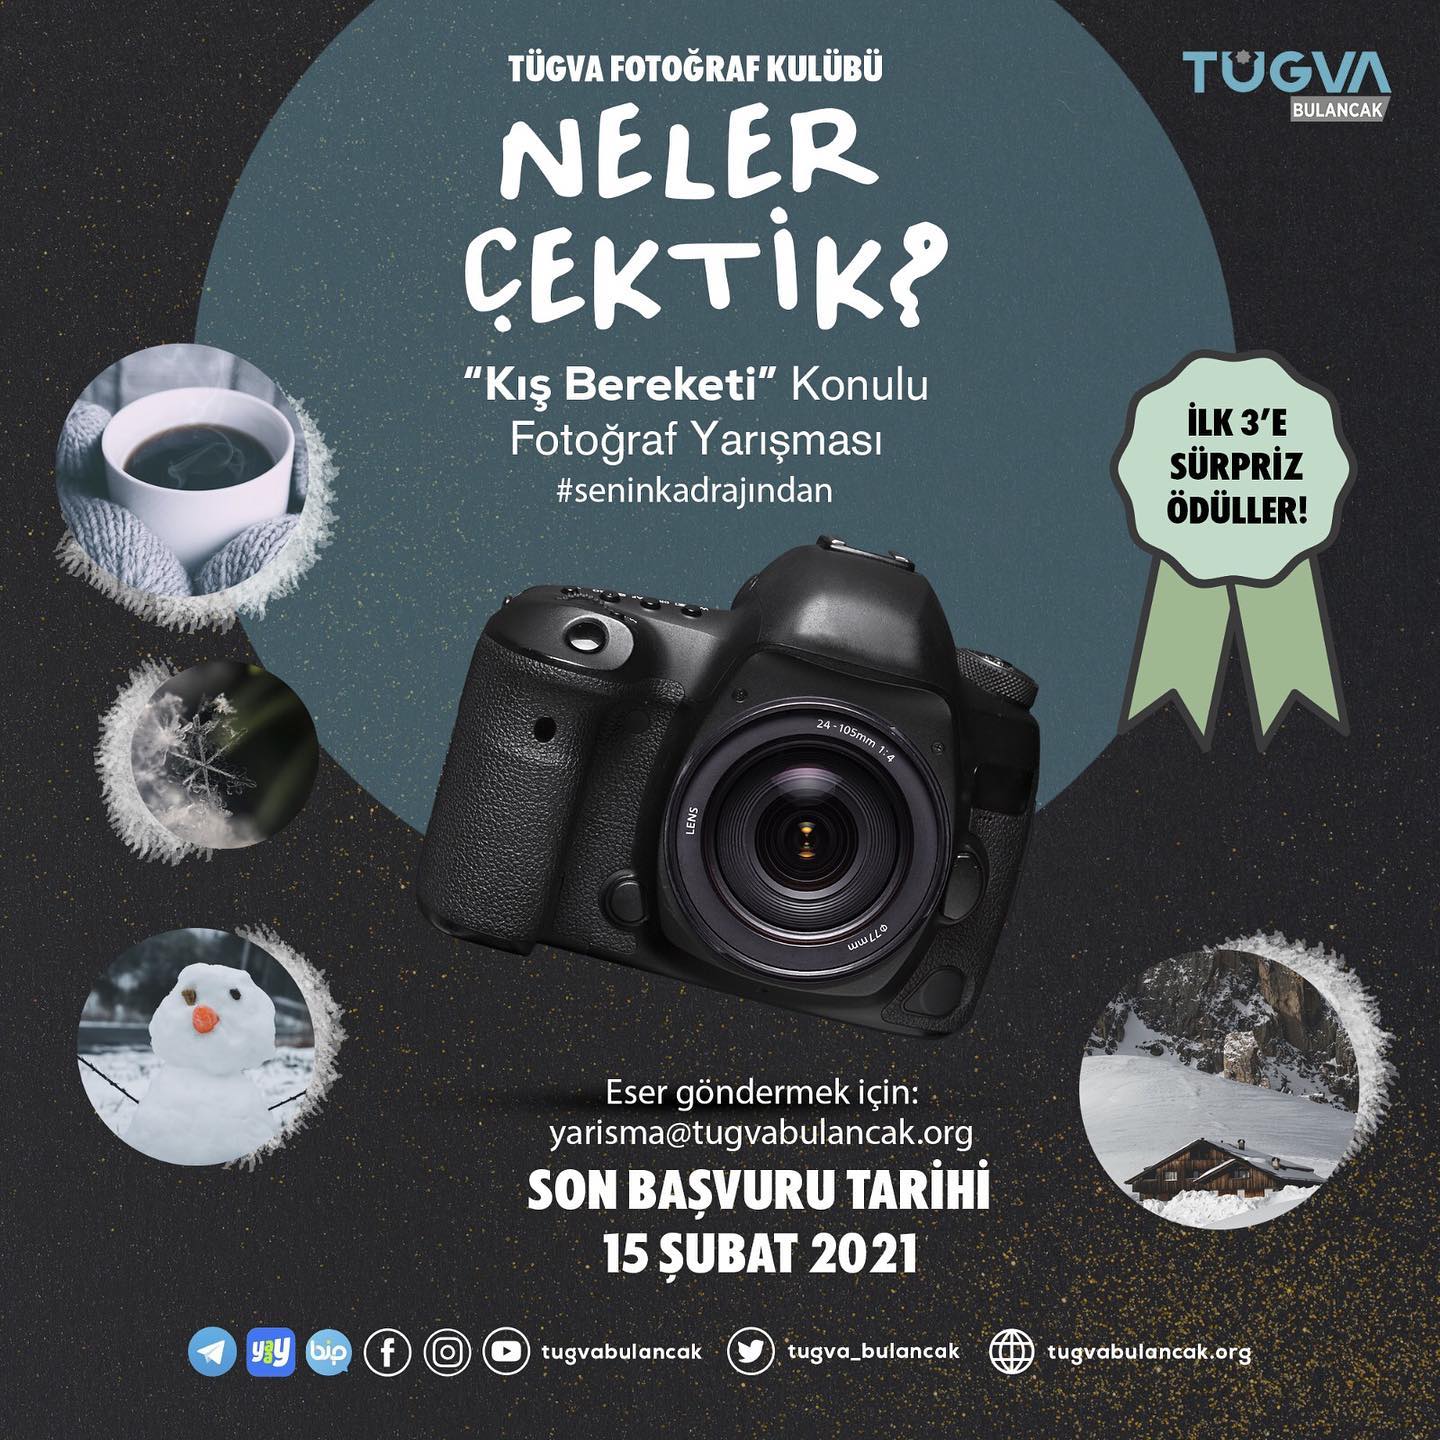 TÜGVA Bulancak'tan Kış Bereketi temalı Fotoğraf Yarışması